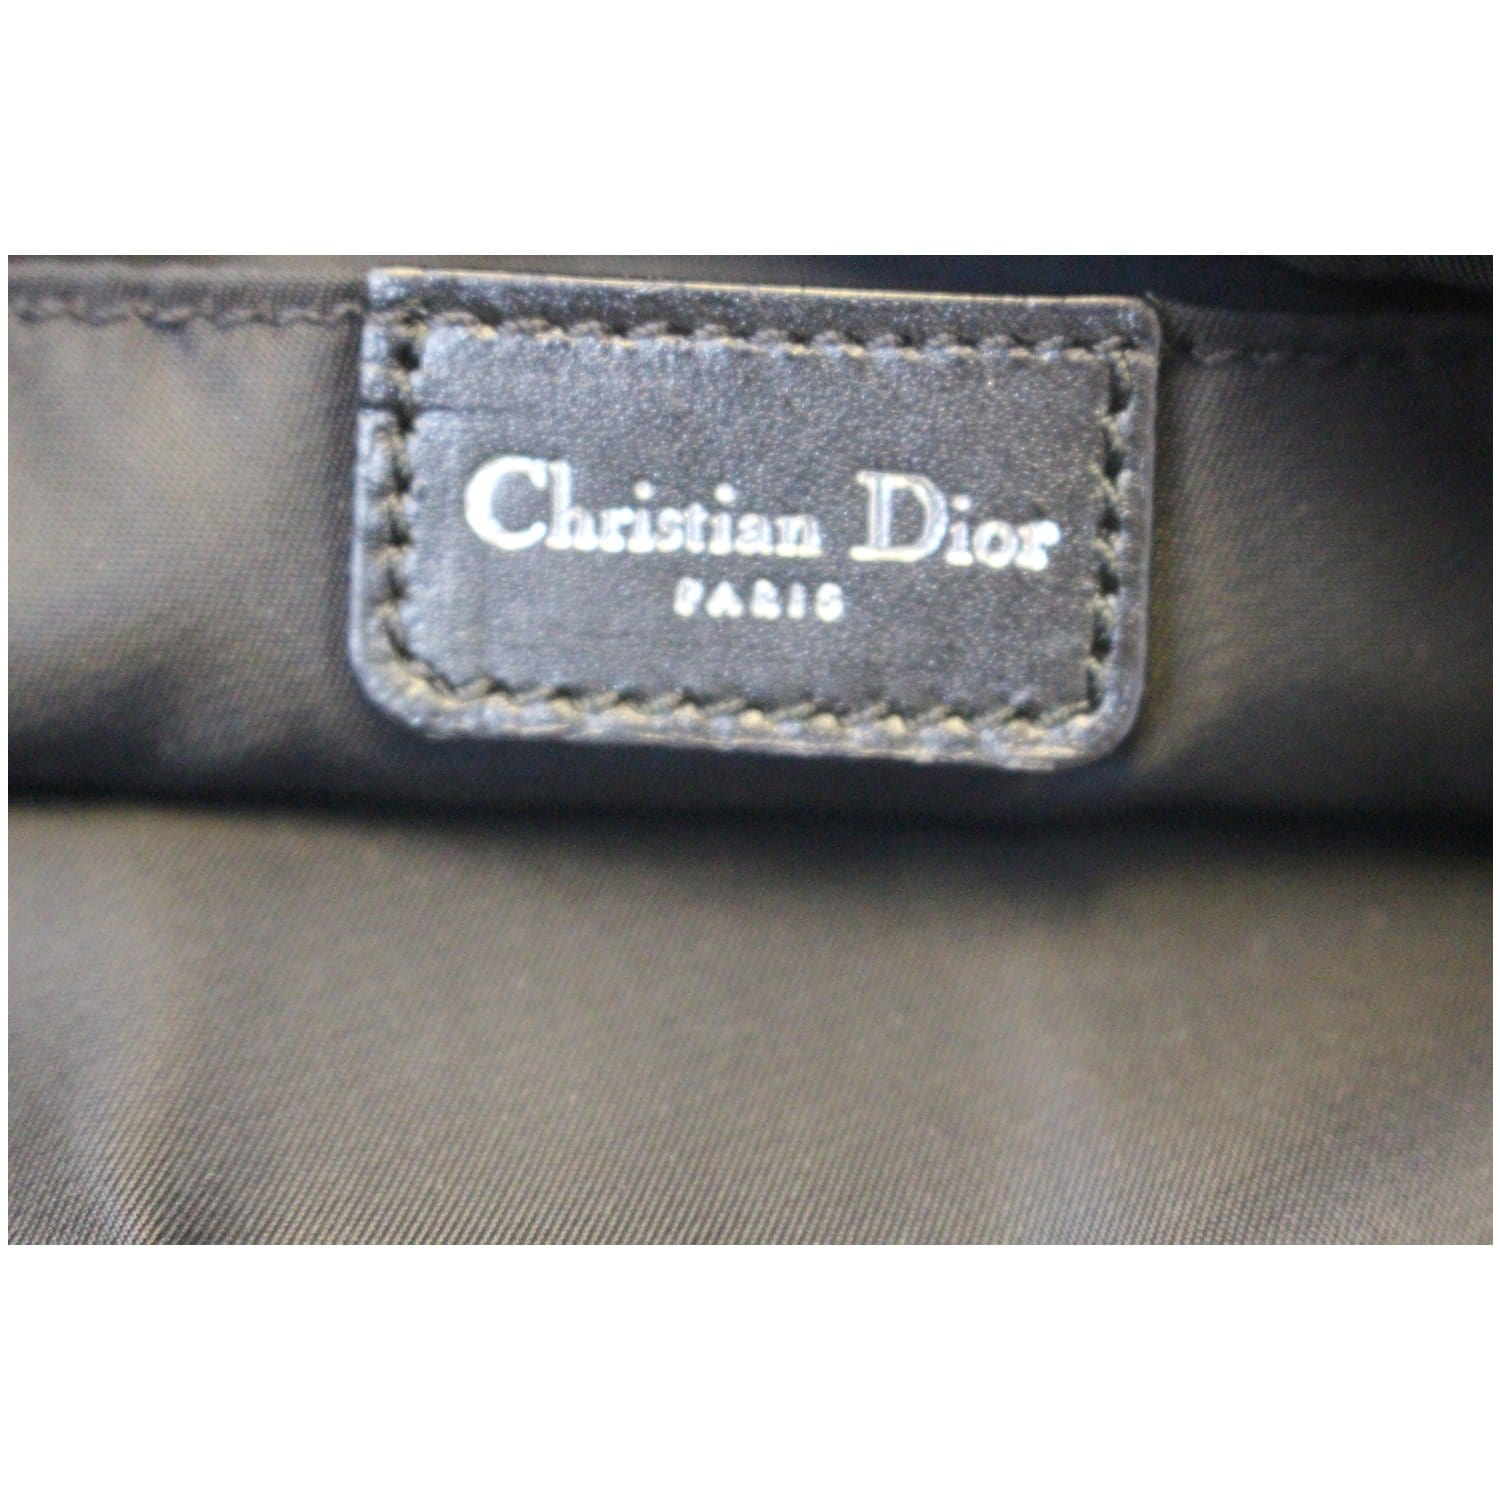 Vintage Christian Dior Trotter shoulder bag for Sale in Miami, FL